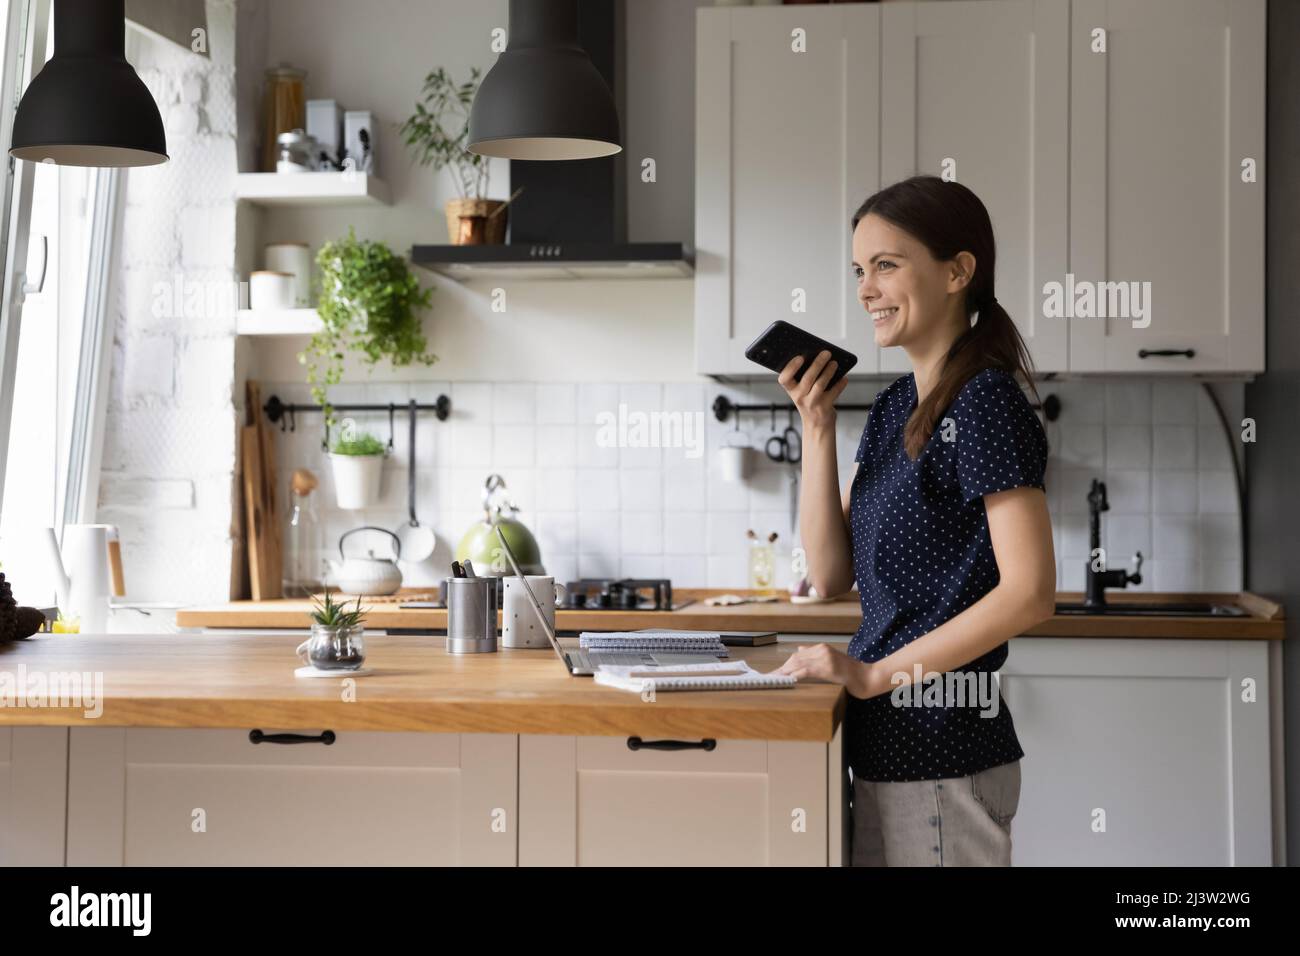 Frau, die in der Küche steht, verlässt die Sprachnachricht über das Mobiltelefon Stockfoto